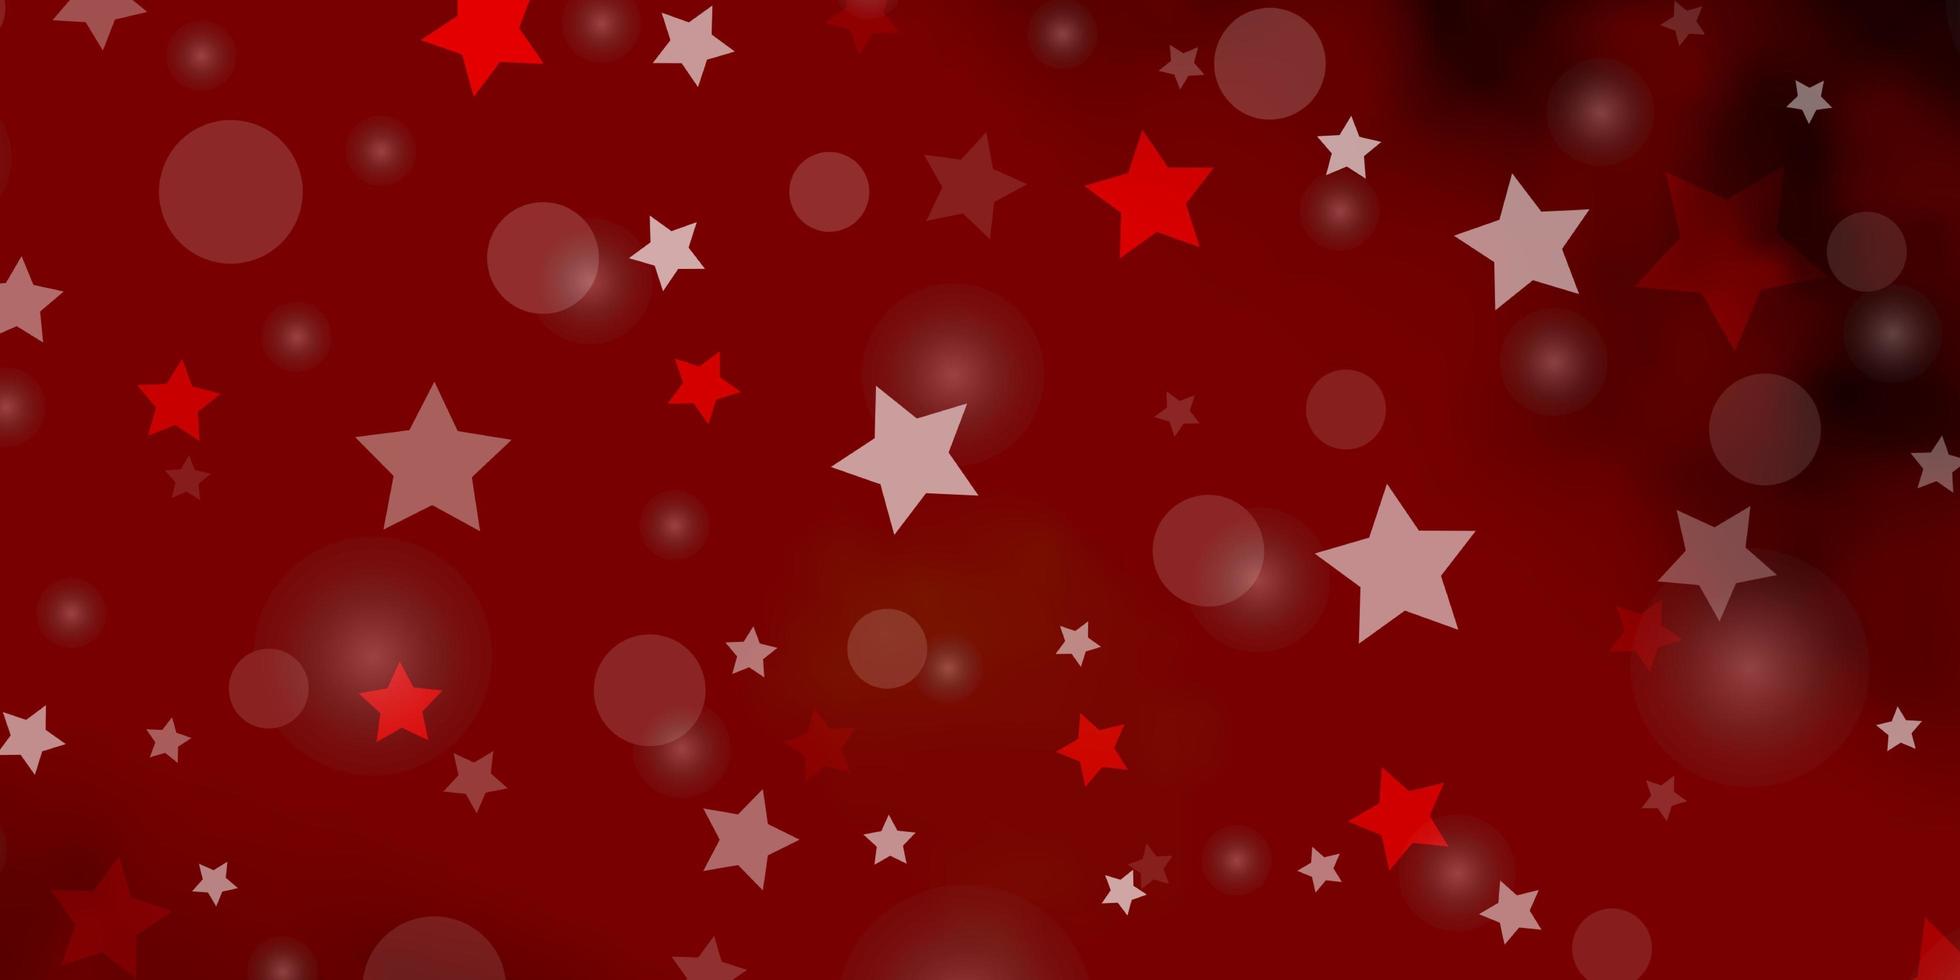 Fondo de vector rojo oscuro con círculos, estrellas. Ilustración colorida con puntos degradados, estrellas. plantilla para tarjetas de visita, sitios web.